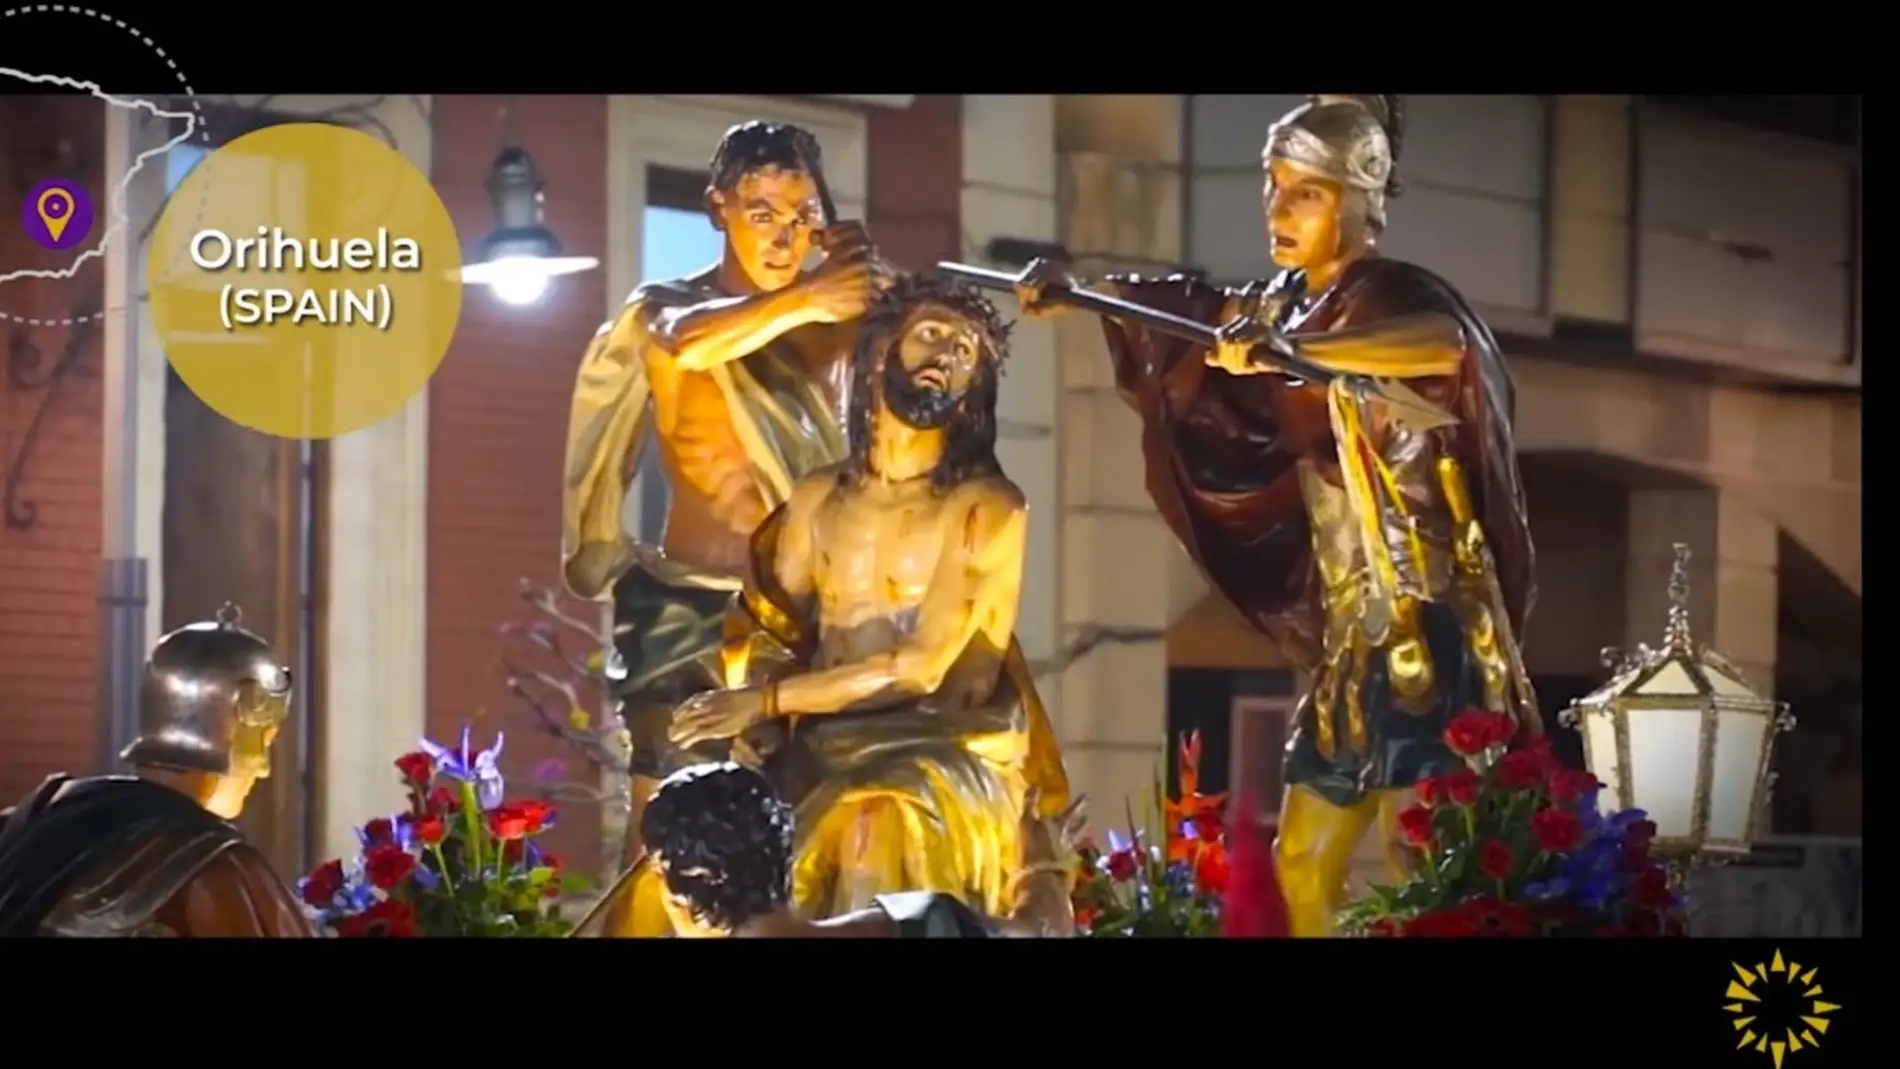 La Red Europea de Celebraciones de Semana Santa y Pascua presenta un vídeo promocional con sus tradiciones 